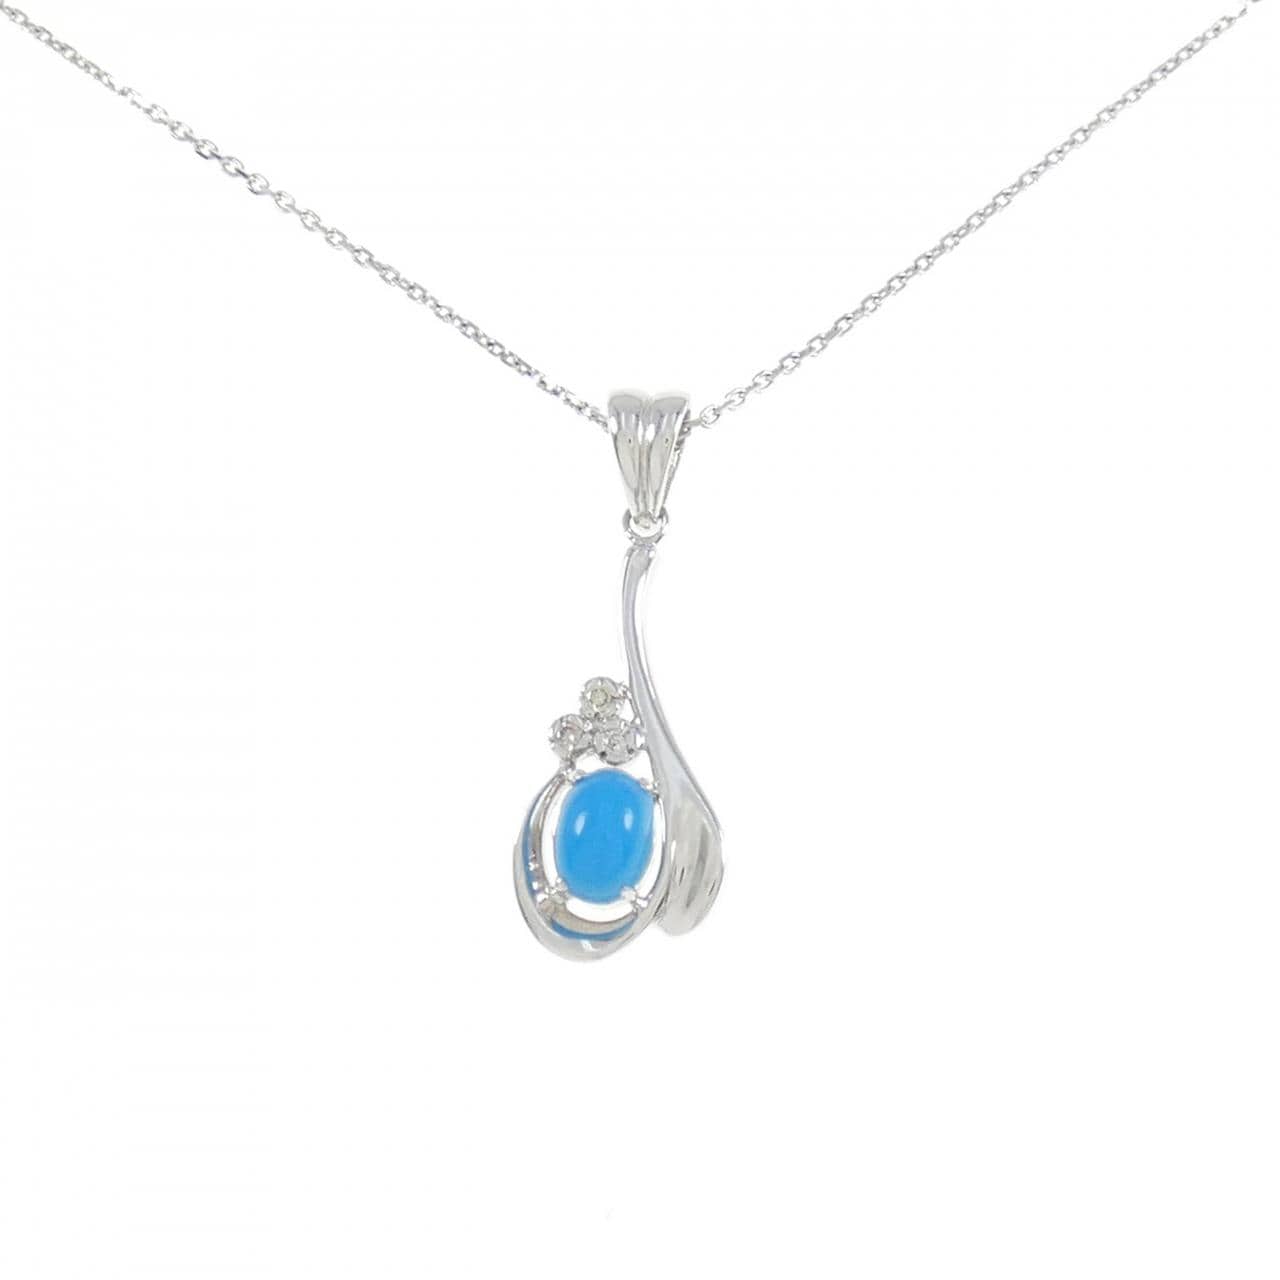 K18WG/750WG turquoise necklace